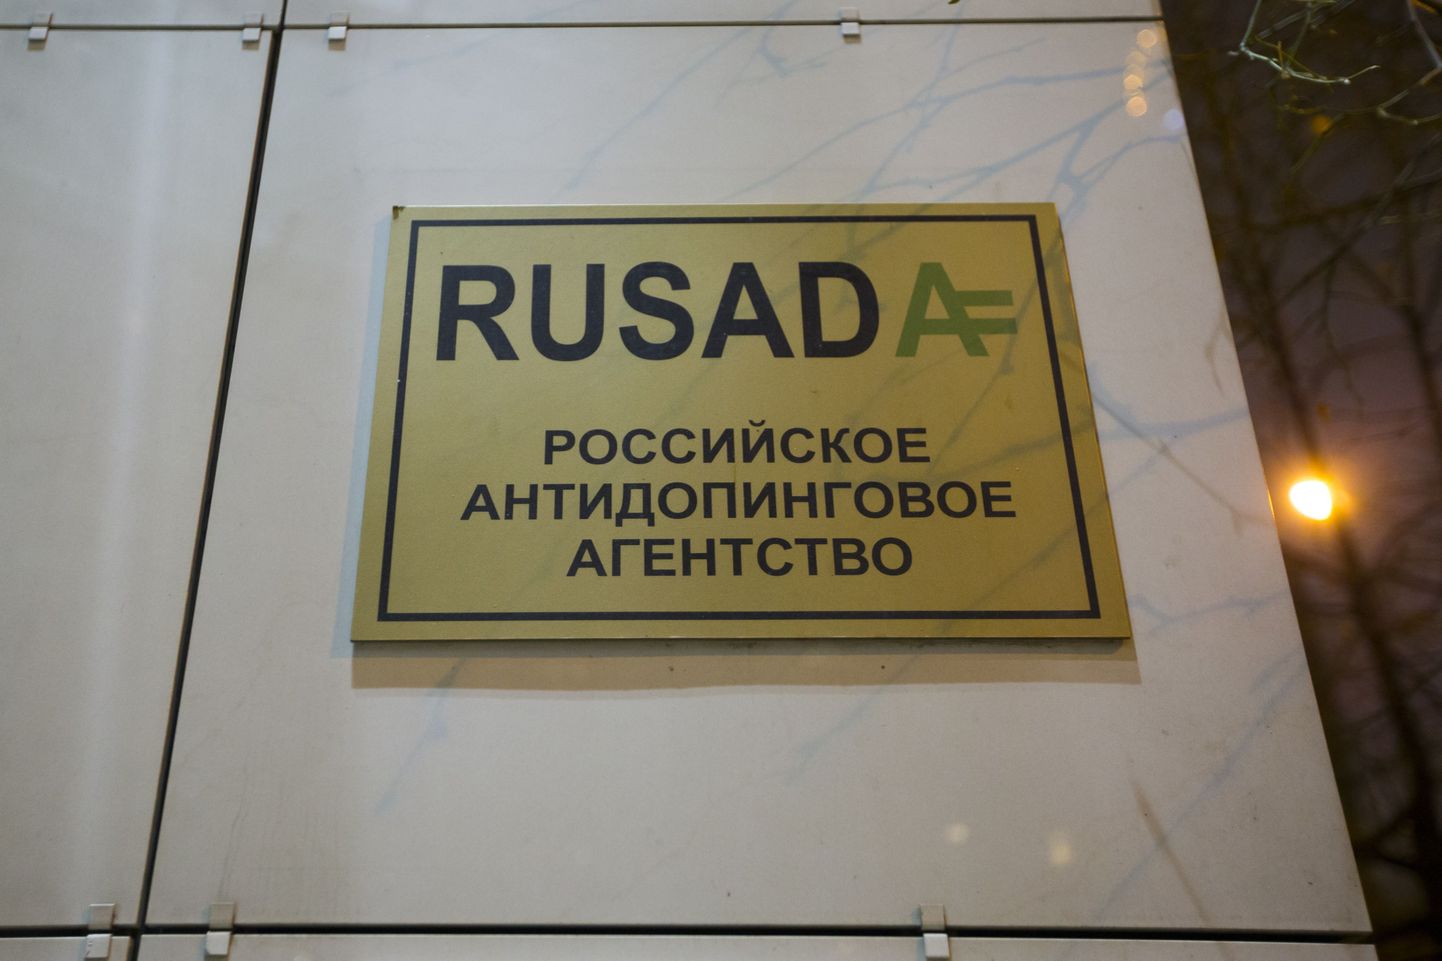 Здание российского антидопингового агентства RUSADA.